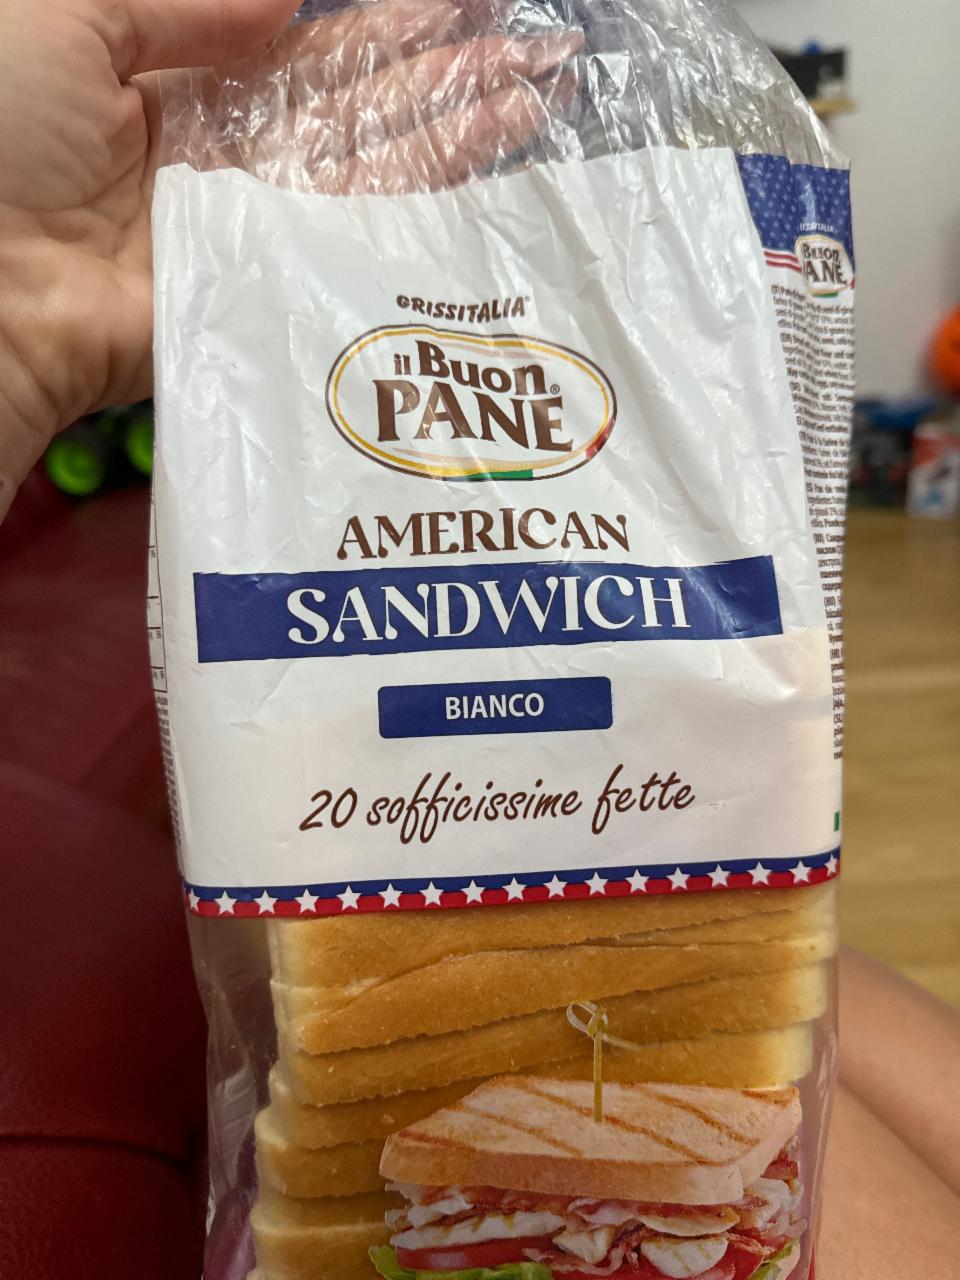 Fotografie - American Sandwich Integrale il Buon Pane